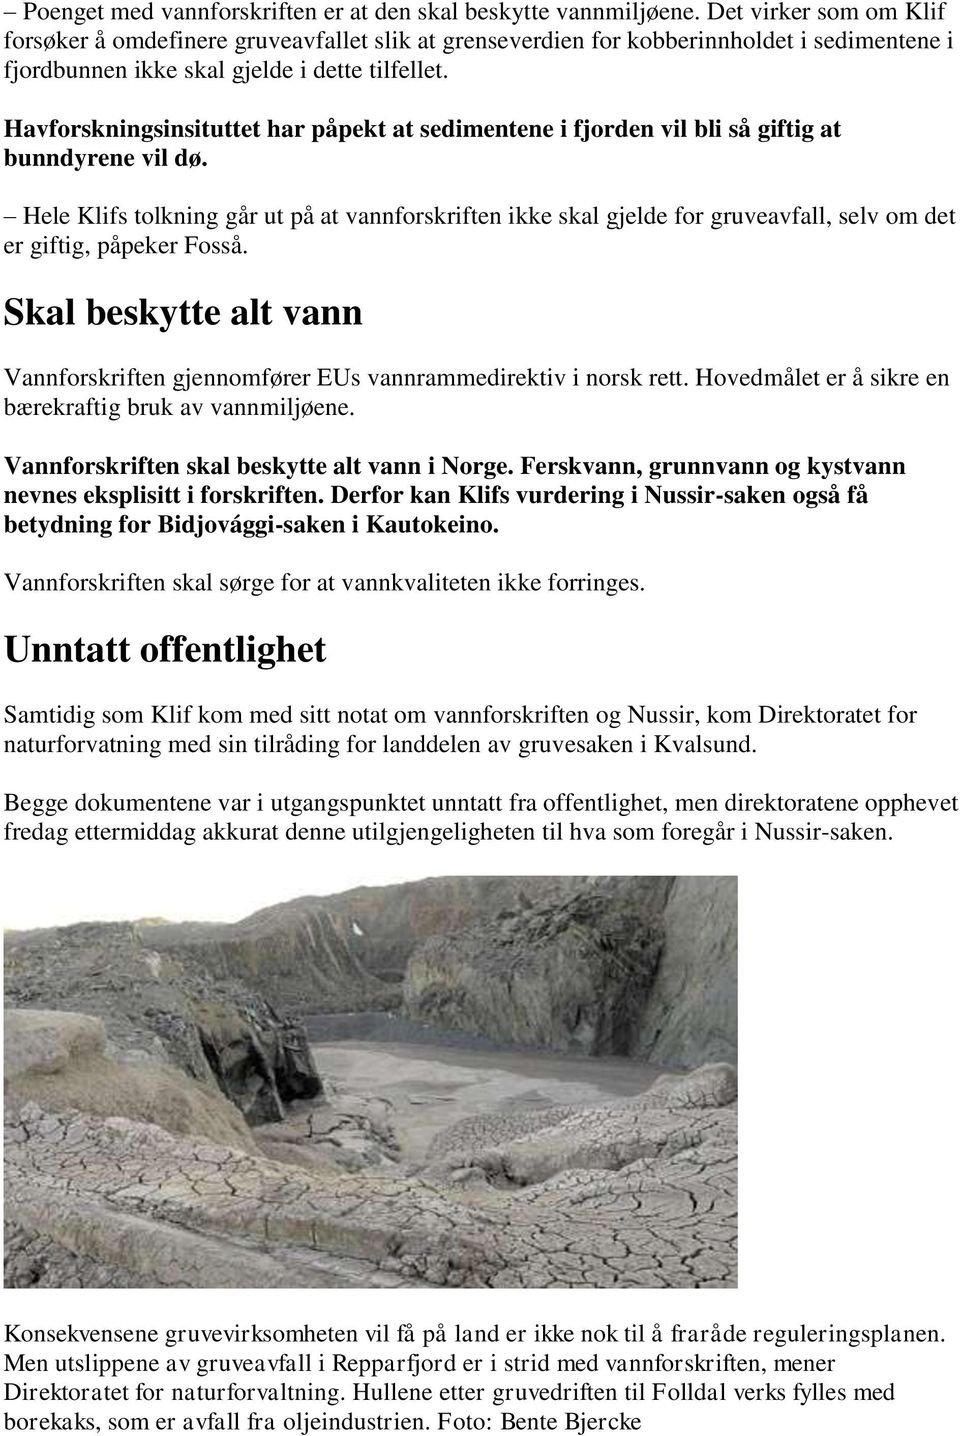 Havforskningsinsituttet har påpekt at sedimentene i fjorden vil bli så giftig at bunndyrene vil dø.